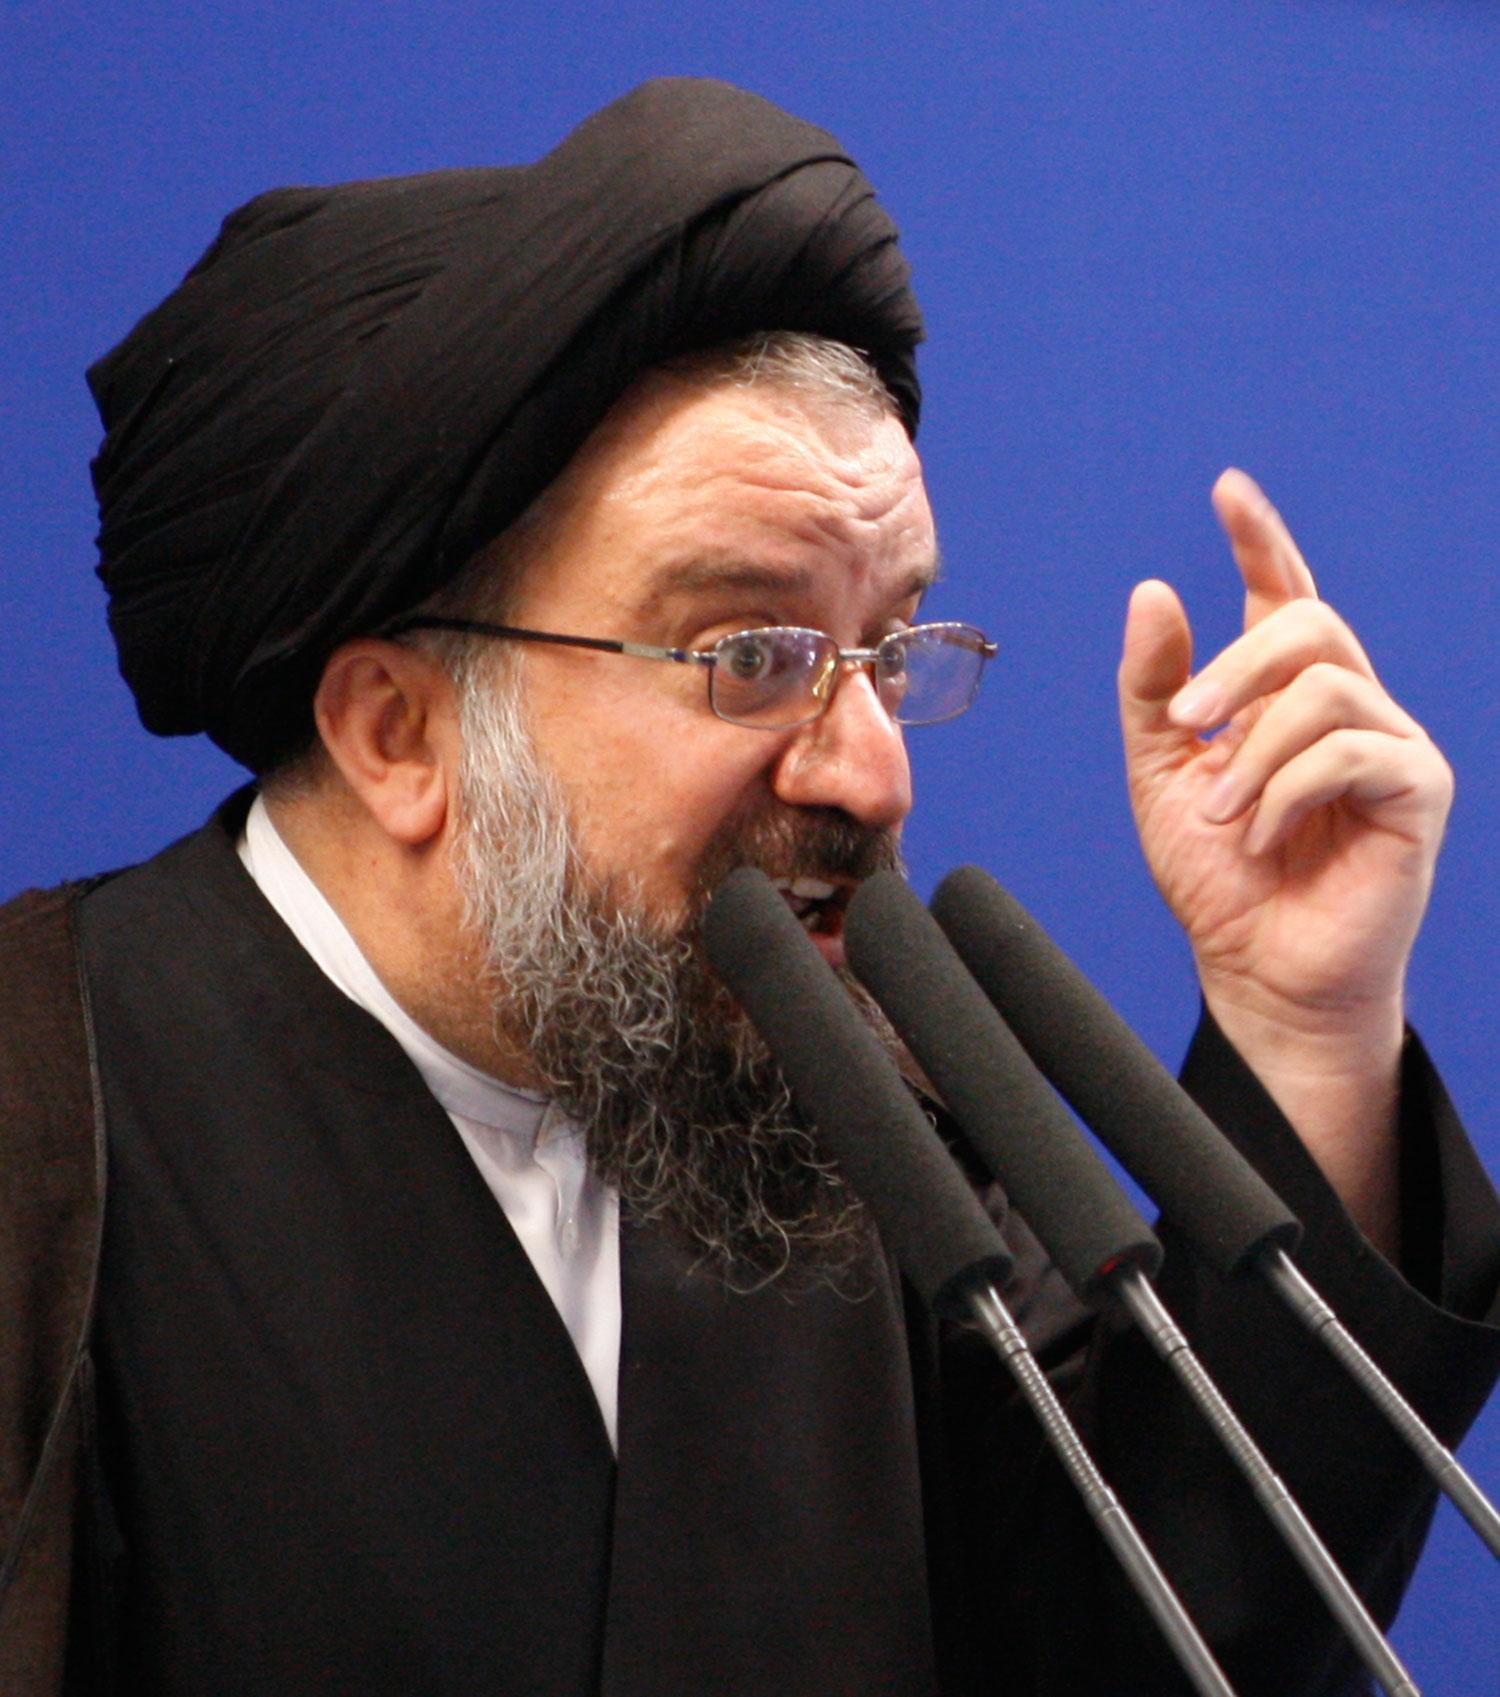 ”Jag väntar mig att den islamiska världen reagerar högljutt och fördömer den ökända regimen så mycket den kan”, säger iranske ayatollan Ahmad Khatami.